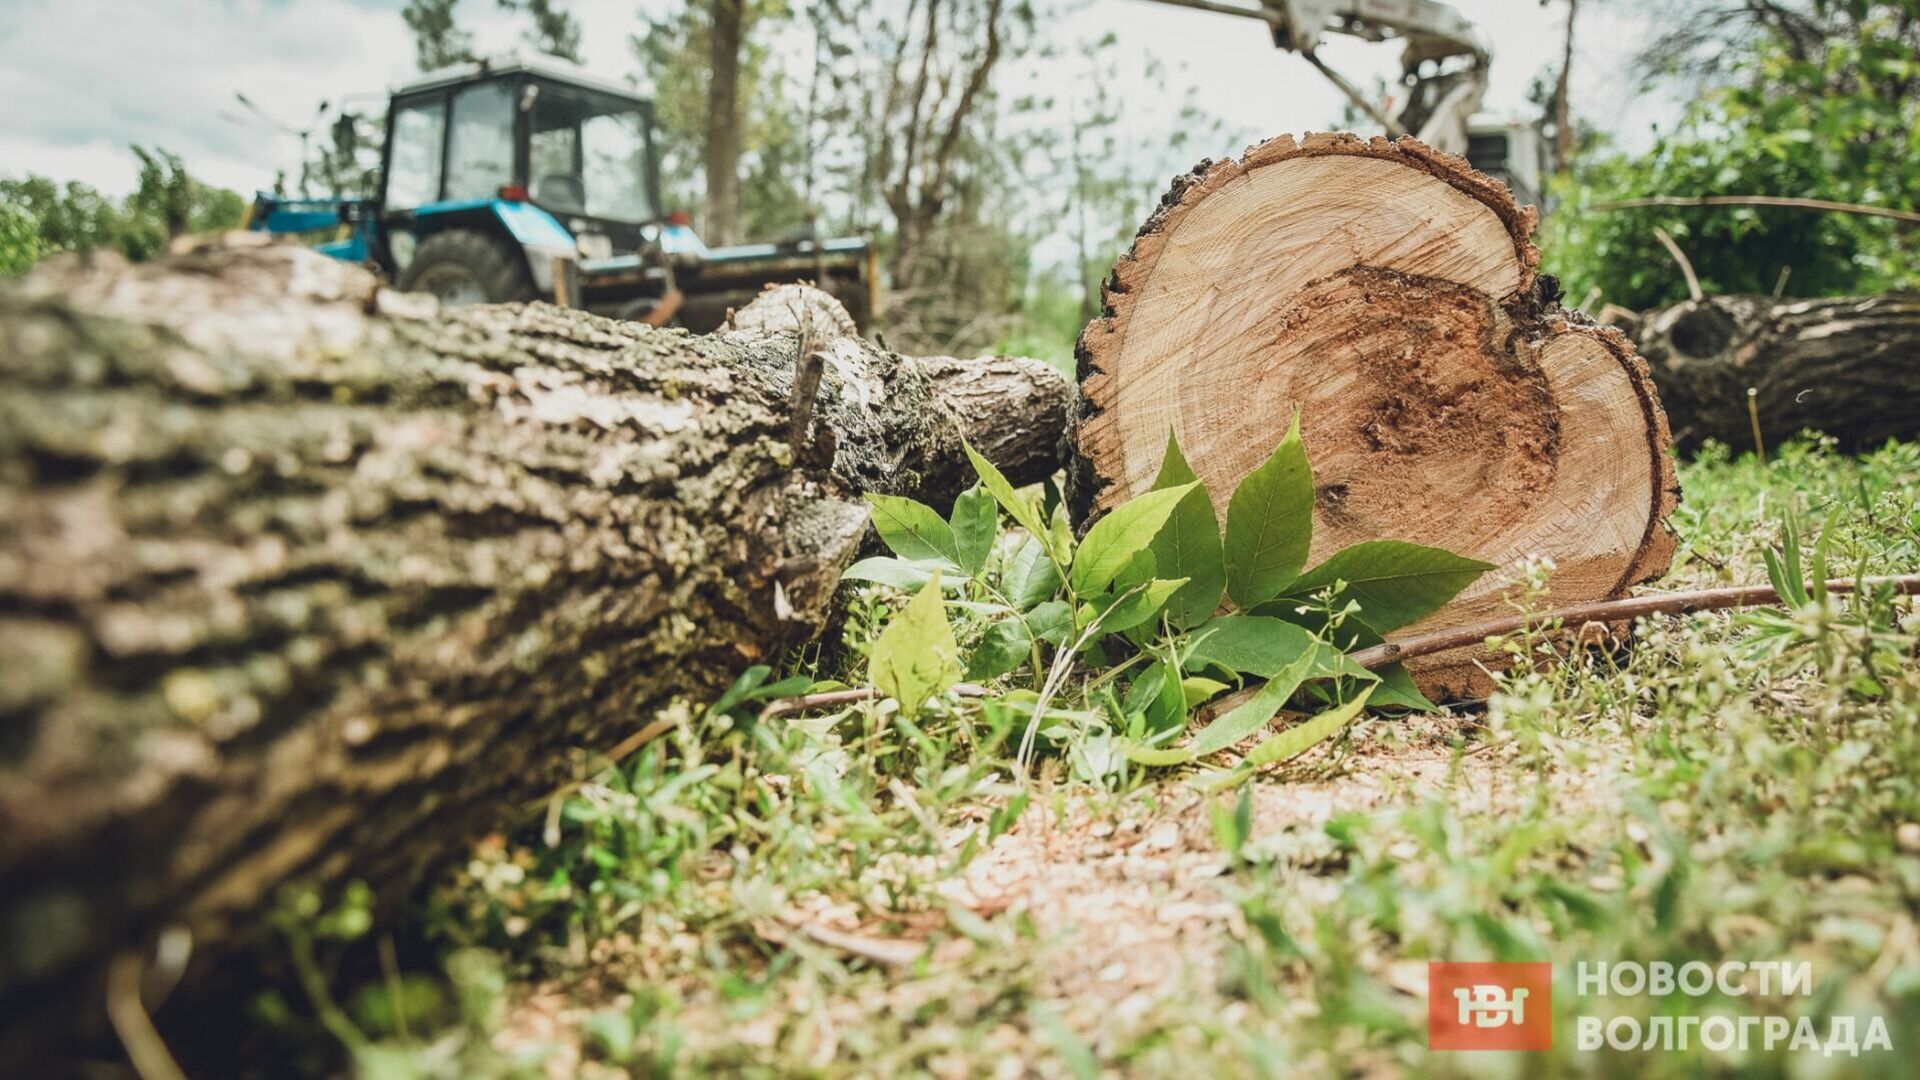 Бизнесмен незаконно вырубил деревьев в Волгограде на 15 миллионов рублей